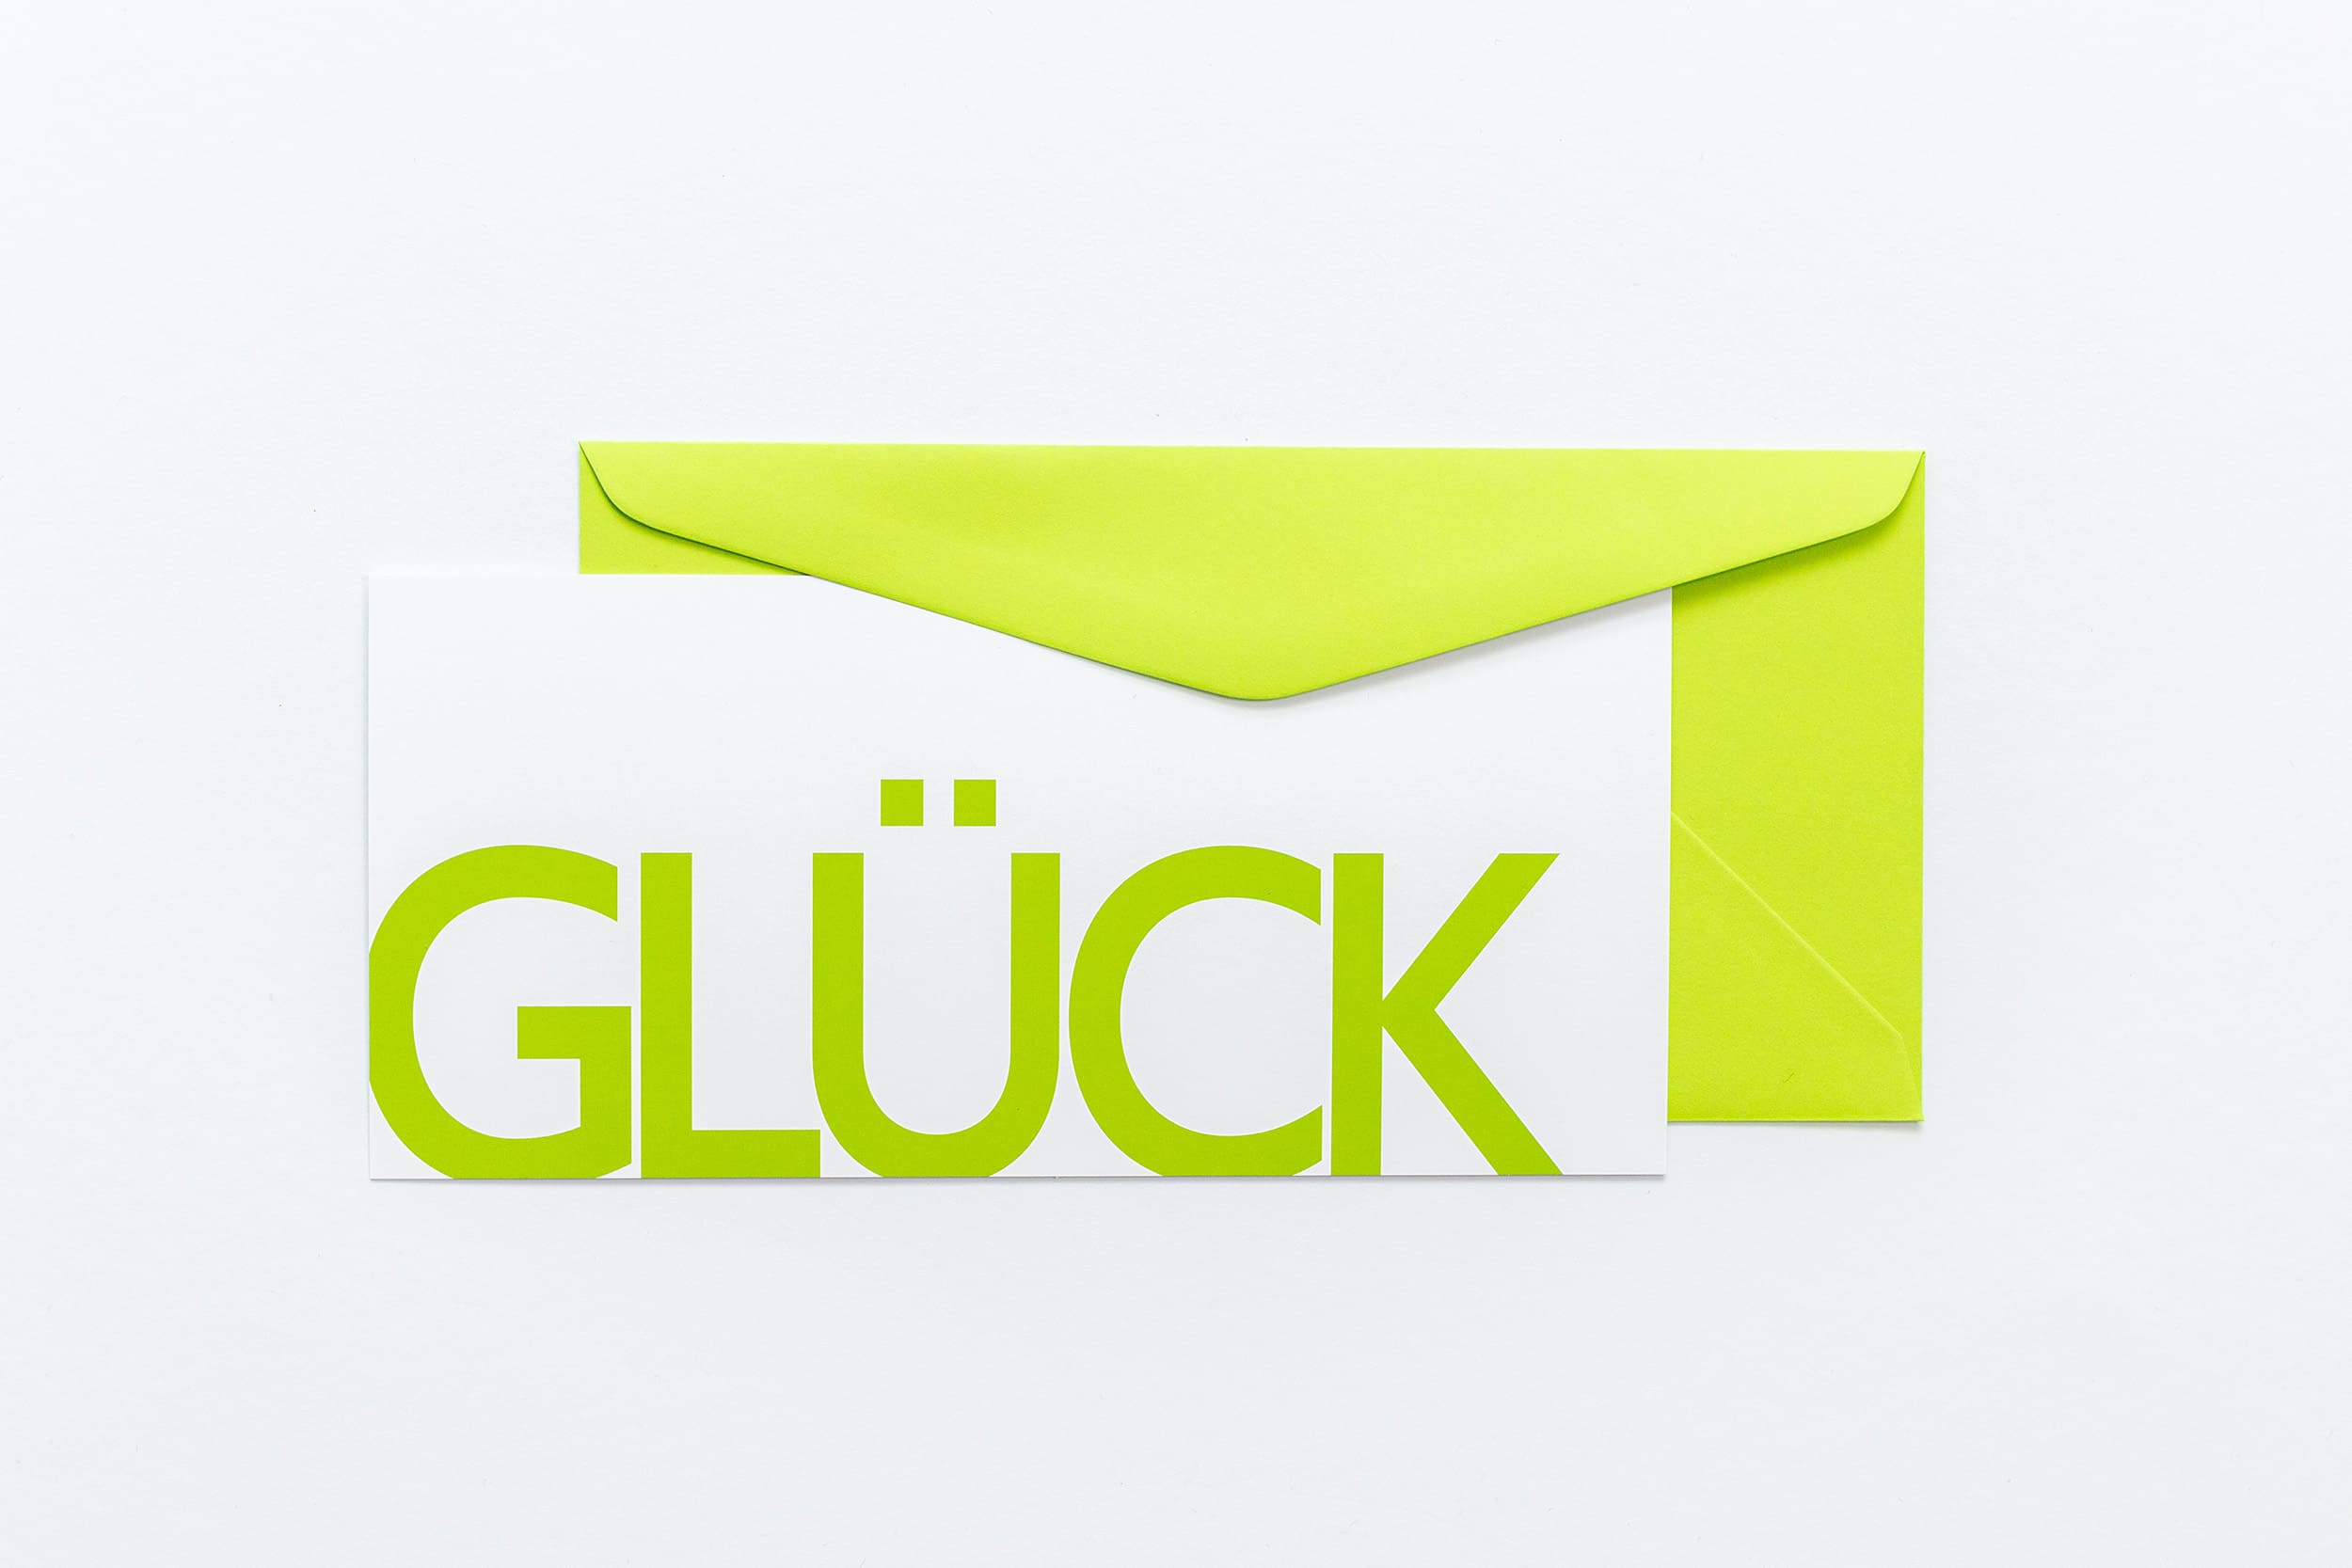 Grußkarte "GLÜCK" mit grünem Briefumschlag